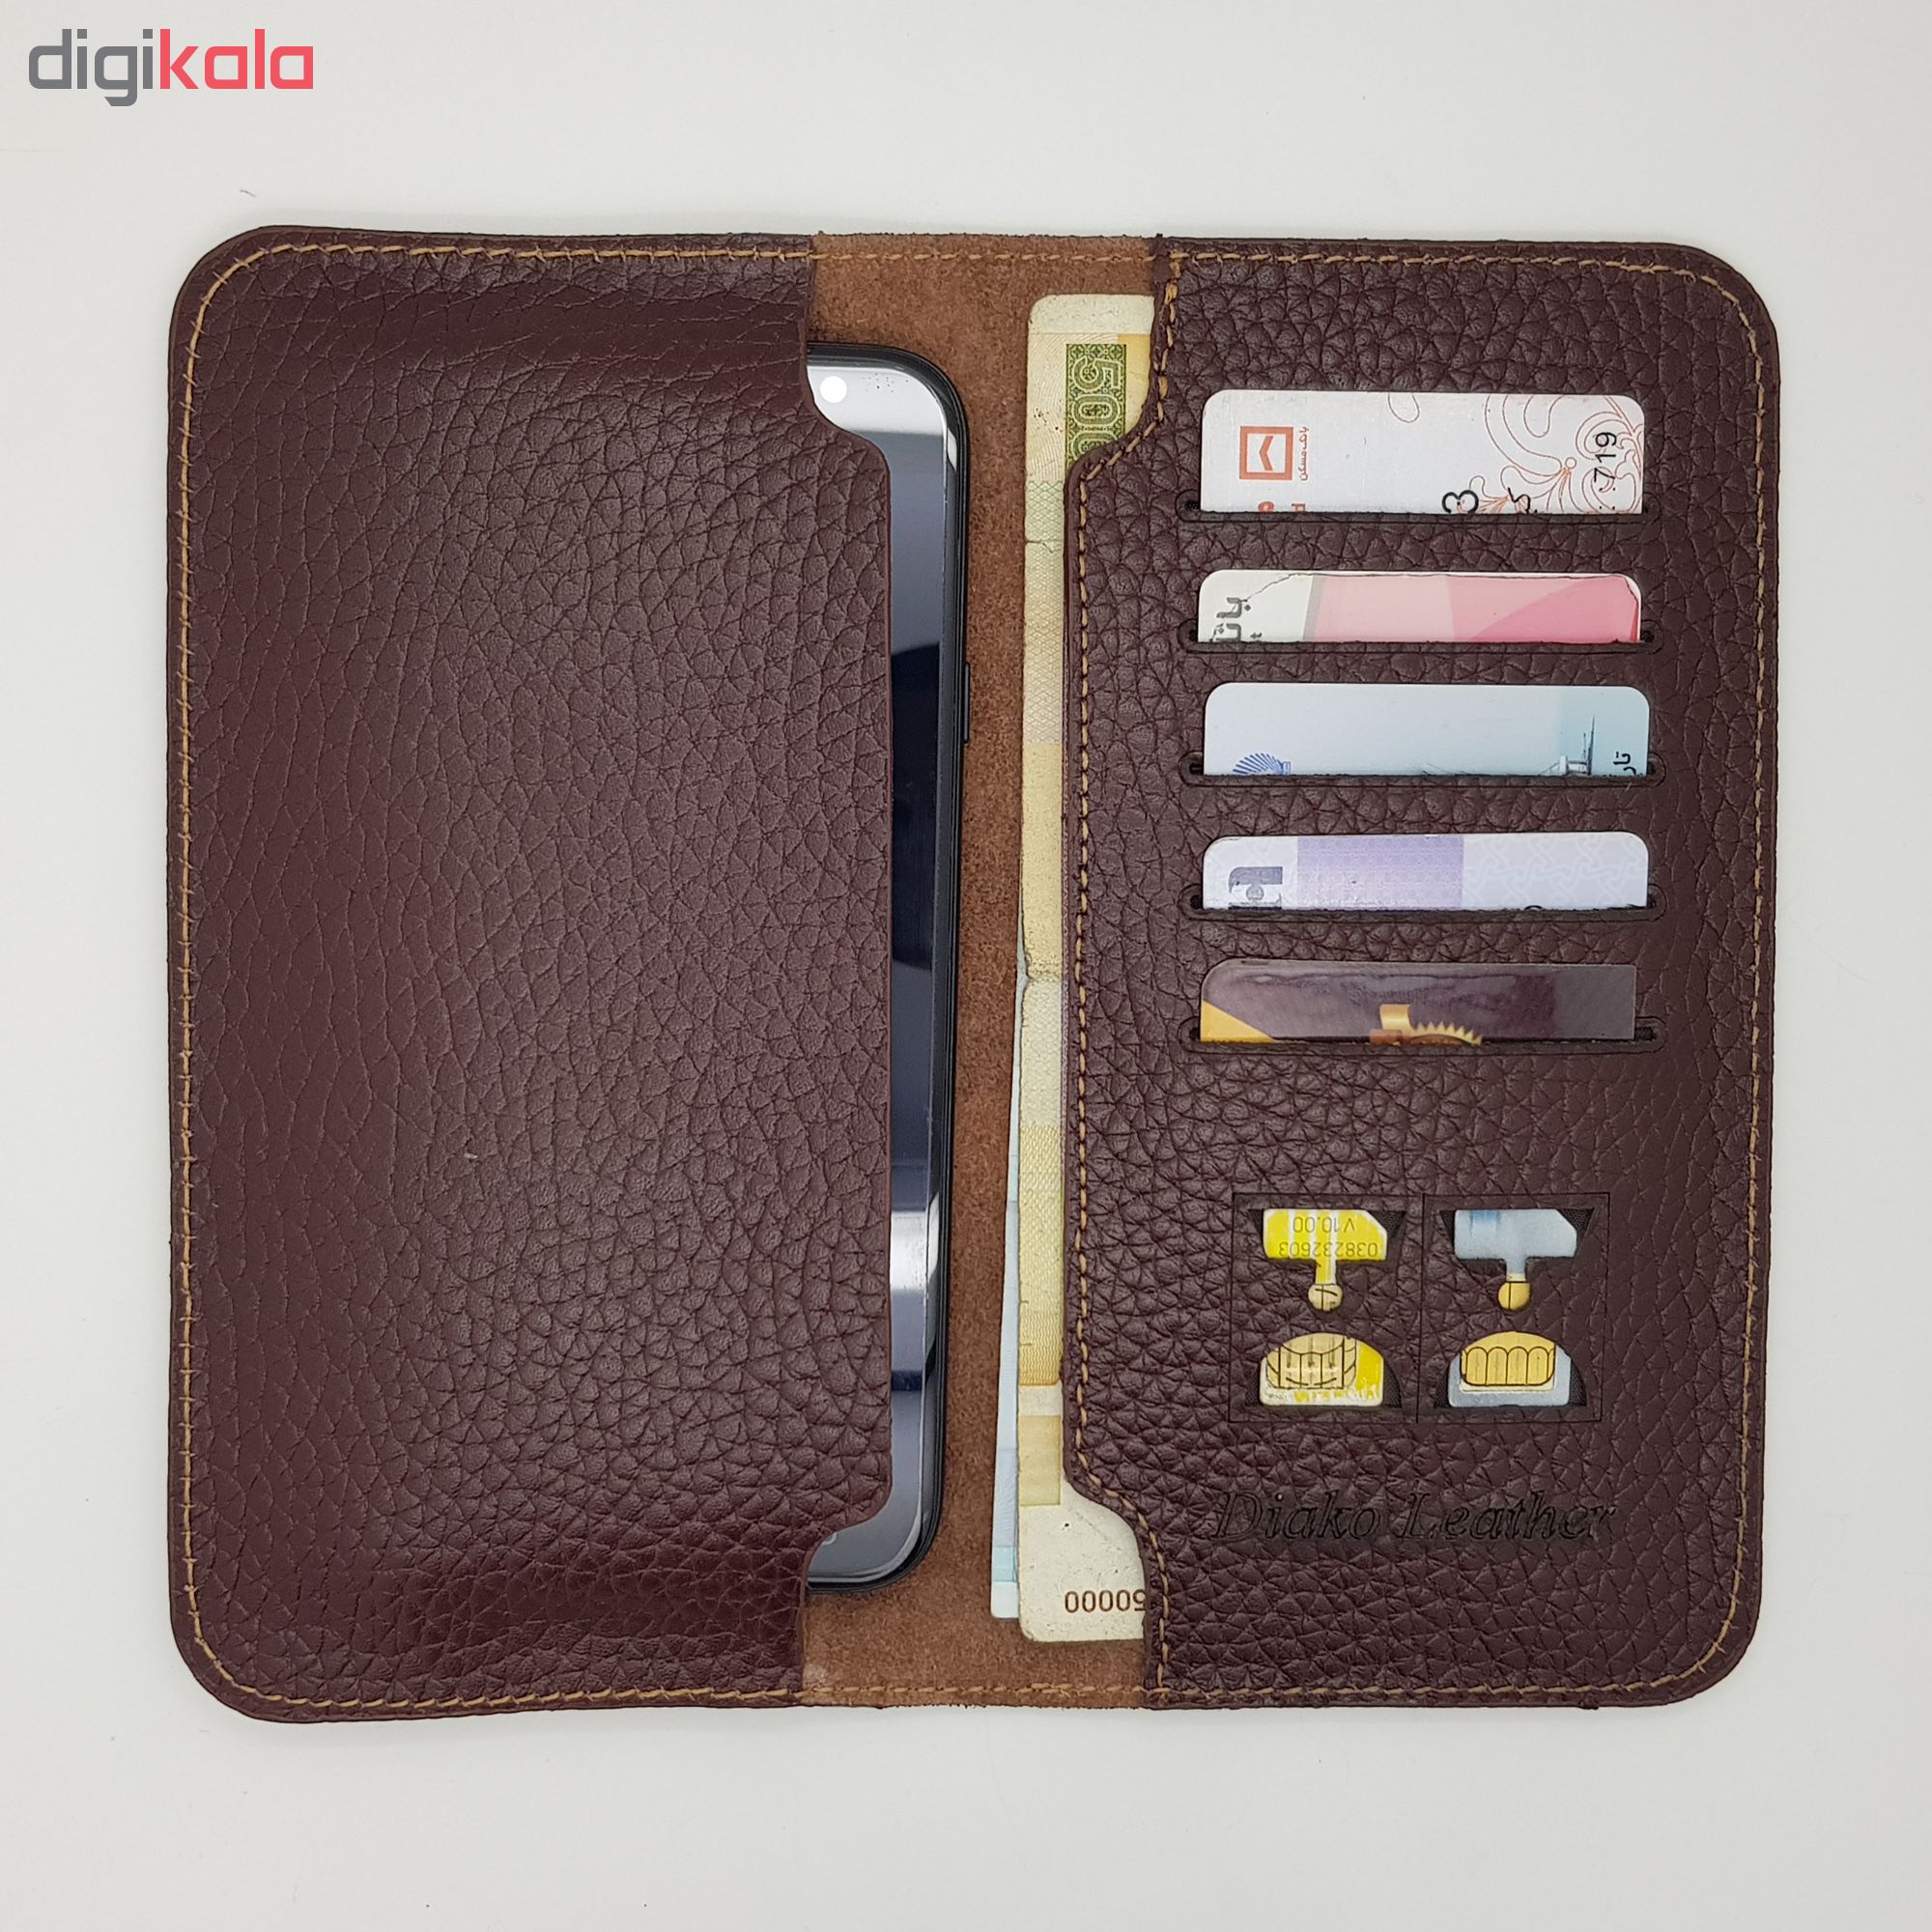 DIYAKO natural leather wallet, code 255